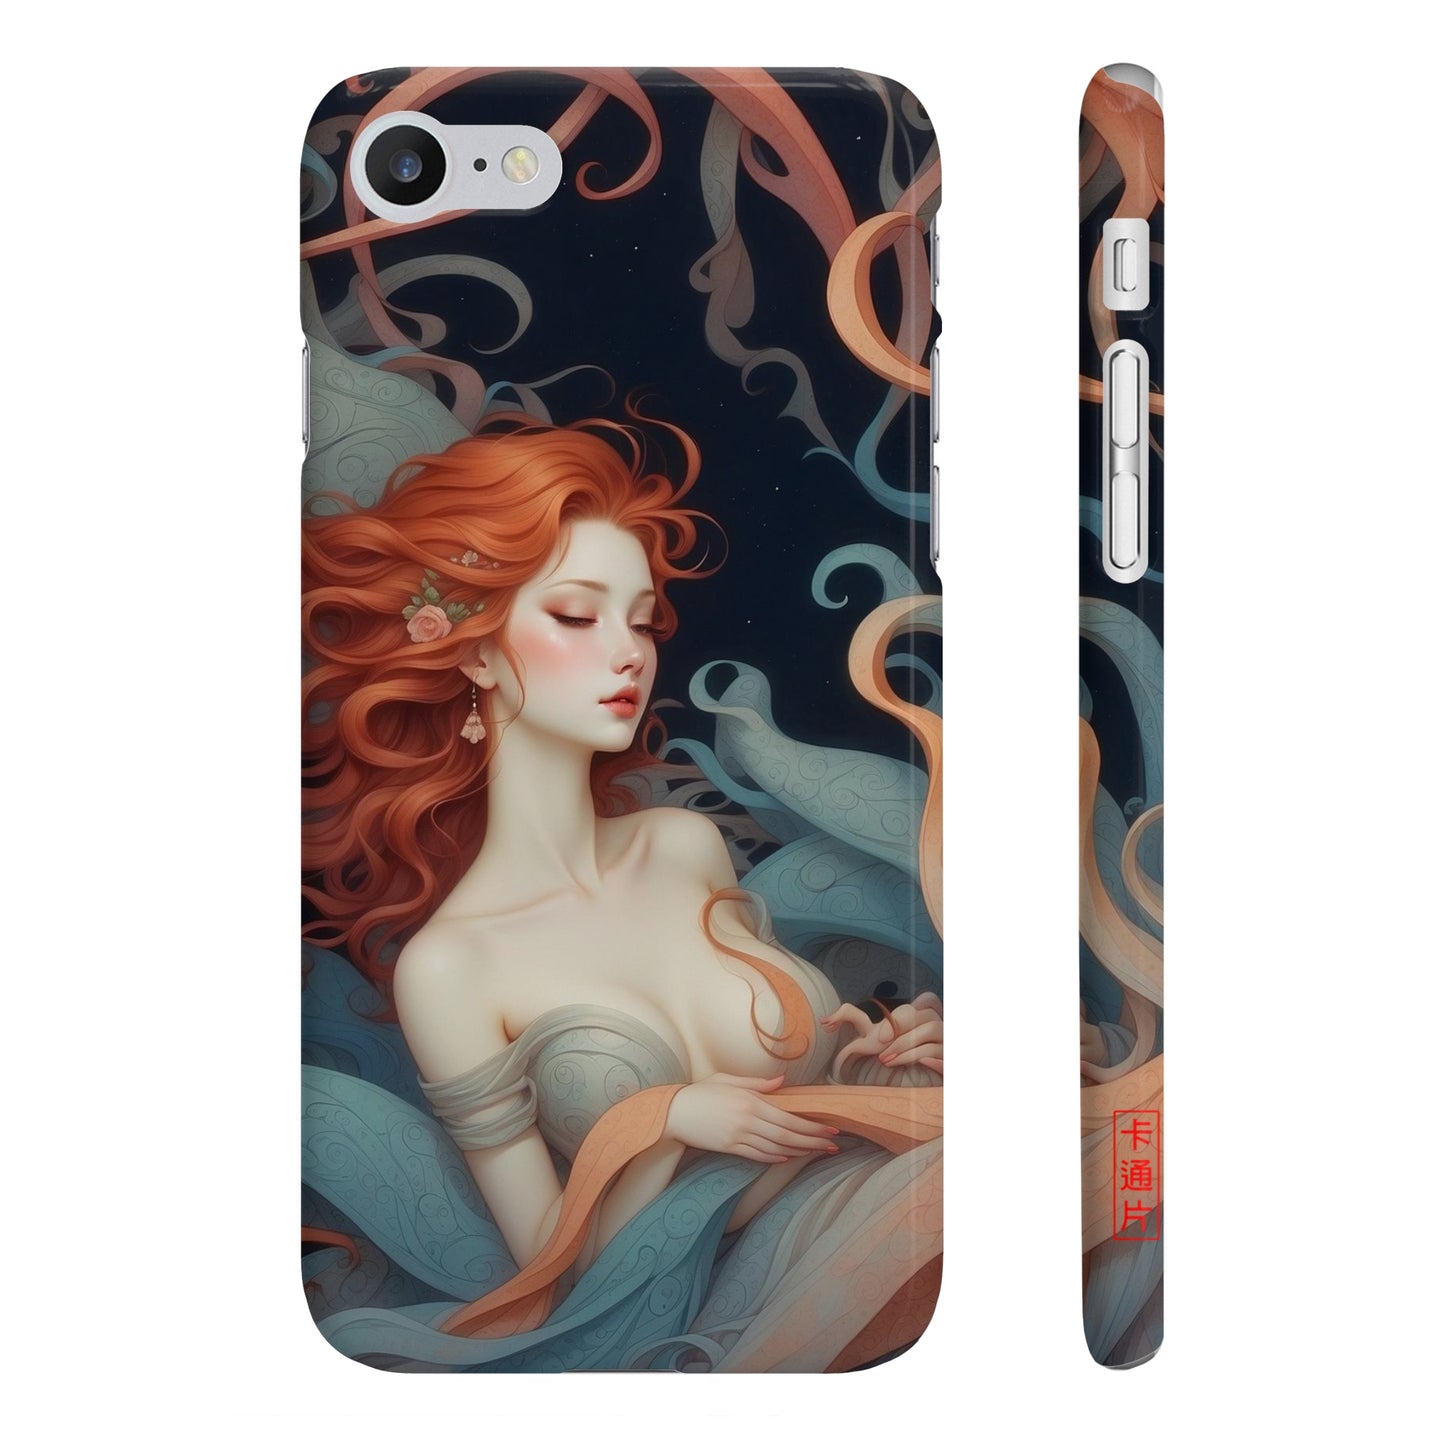 Kǎtōng Piàn - Mermaid Collection - 029 - Slim Phone Cases Printify